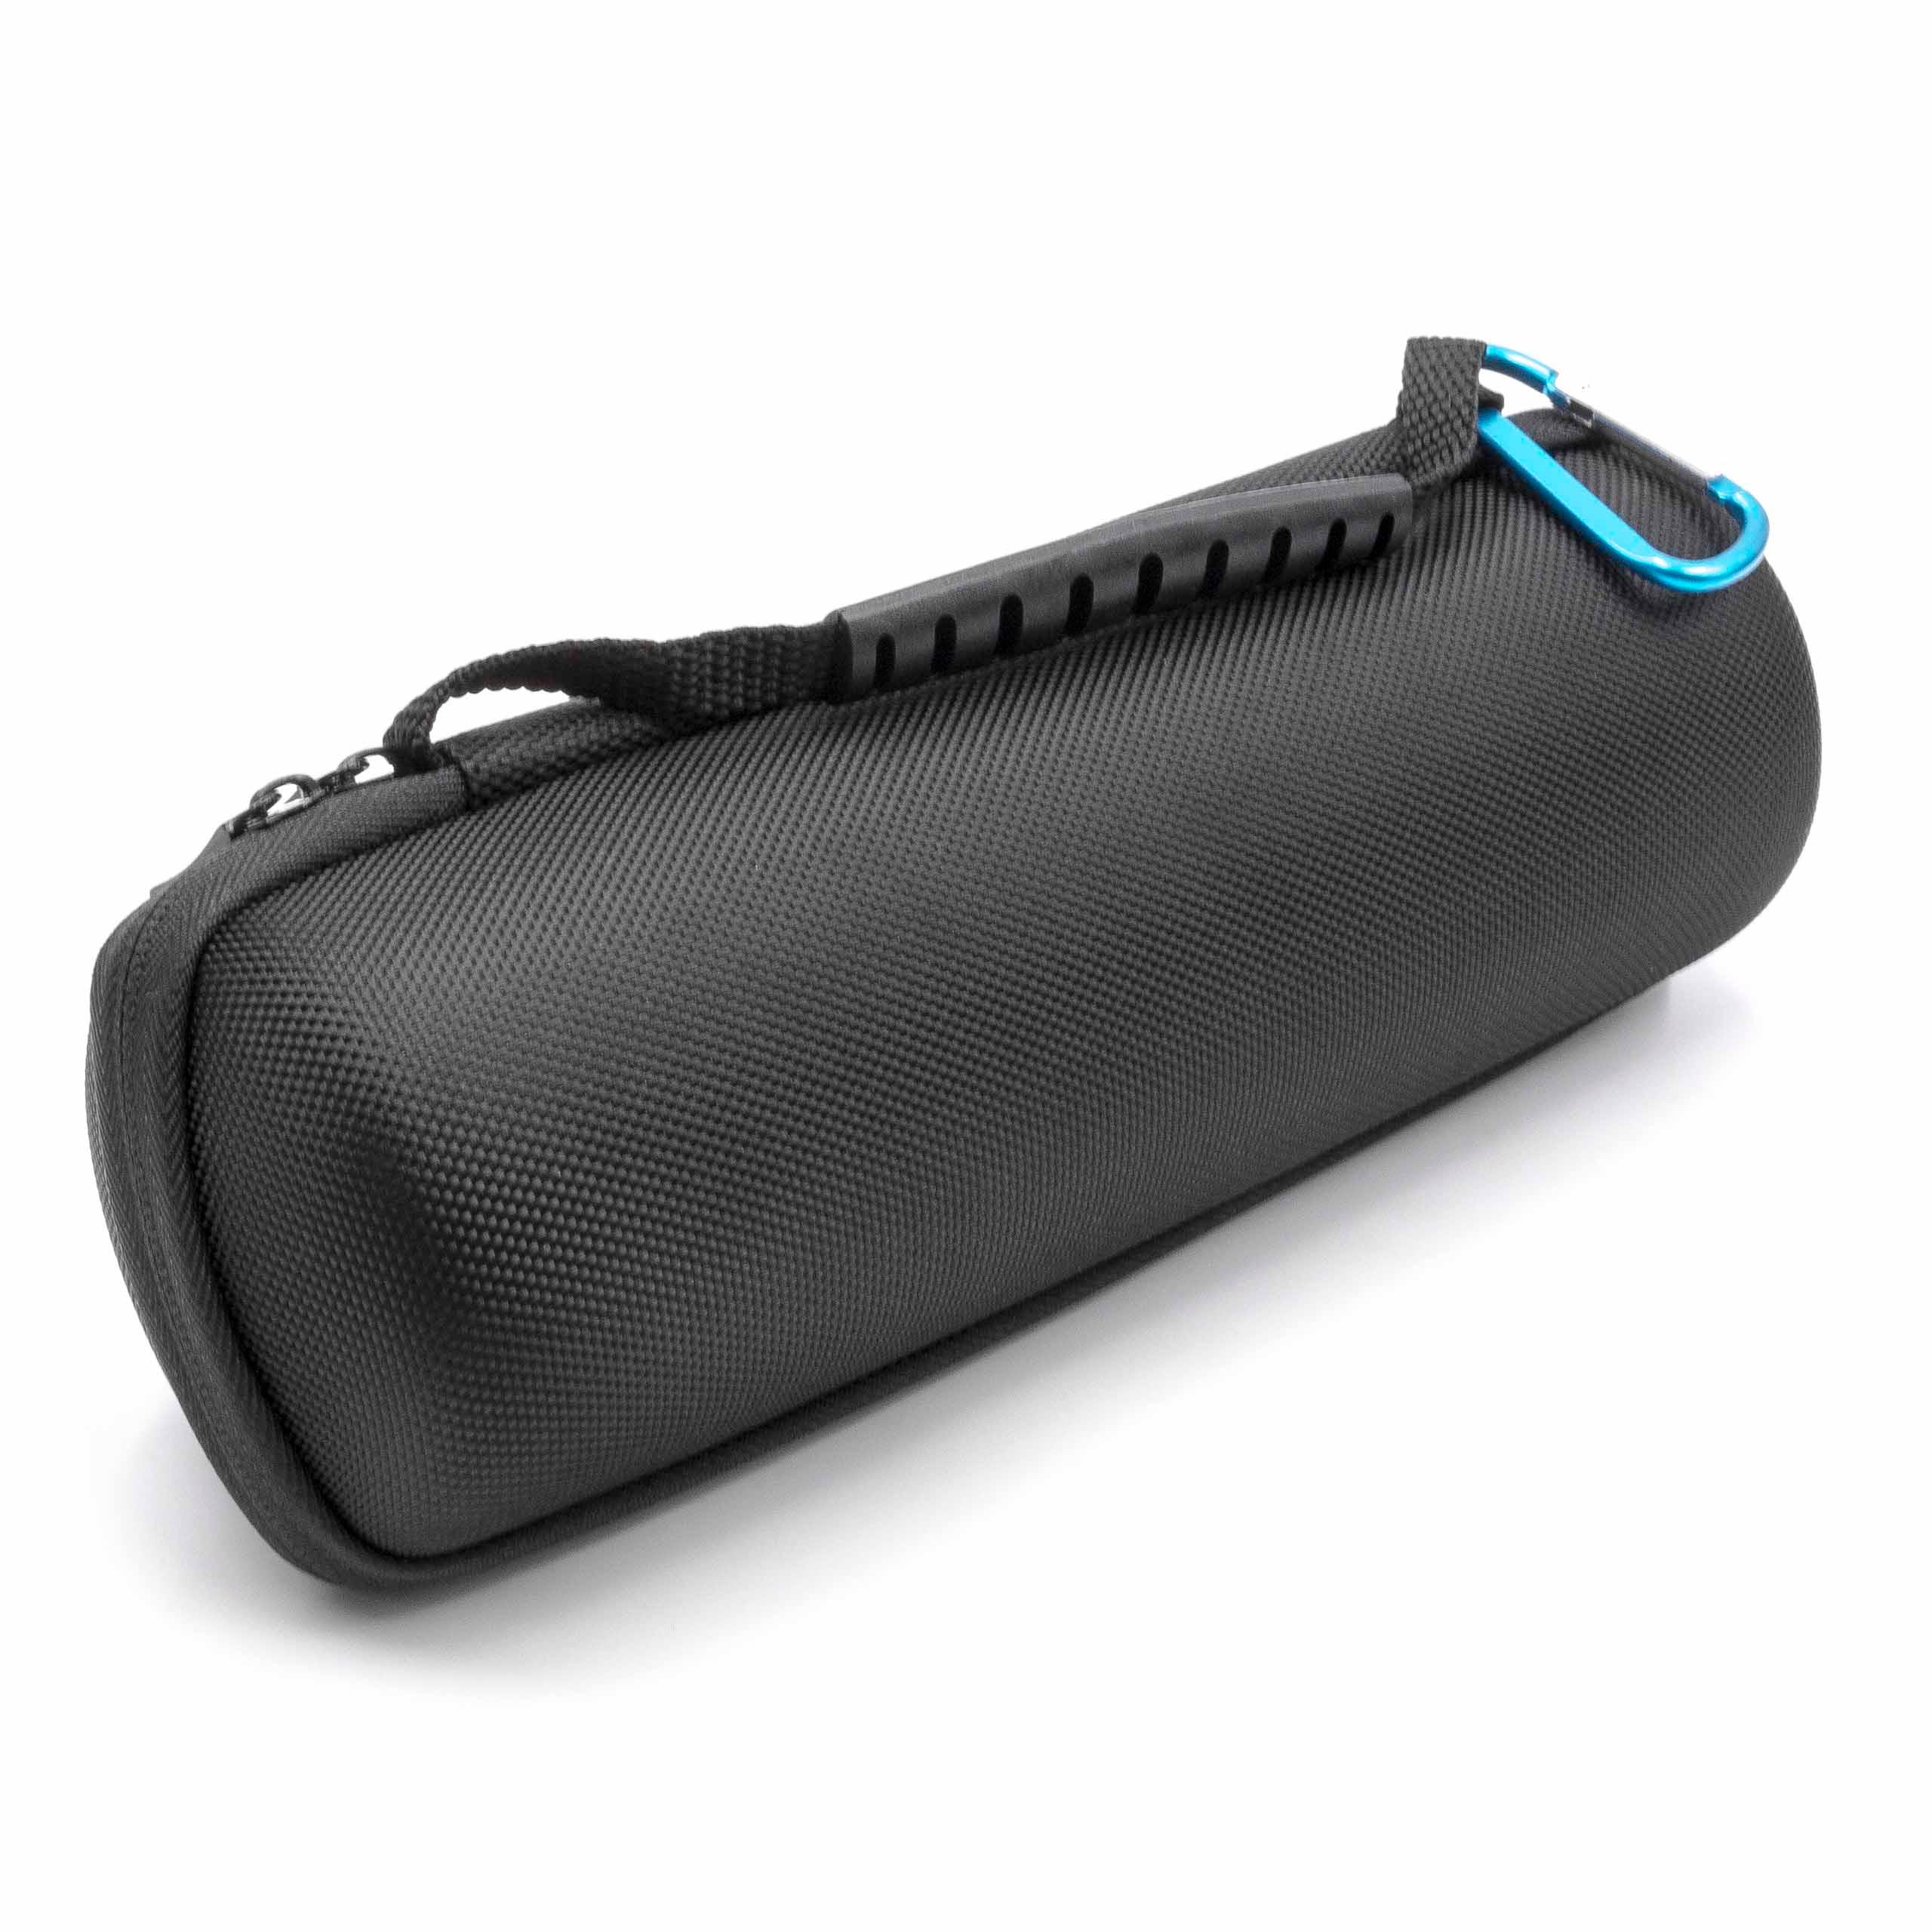 Hardcase Hülle für JBL-Flip 3 & 4 Bluetooth Speaker Travel Tragetasche